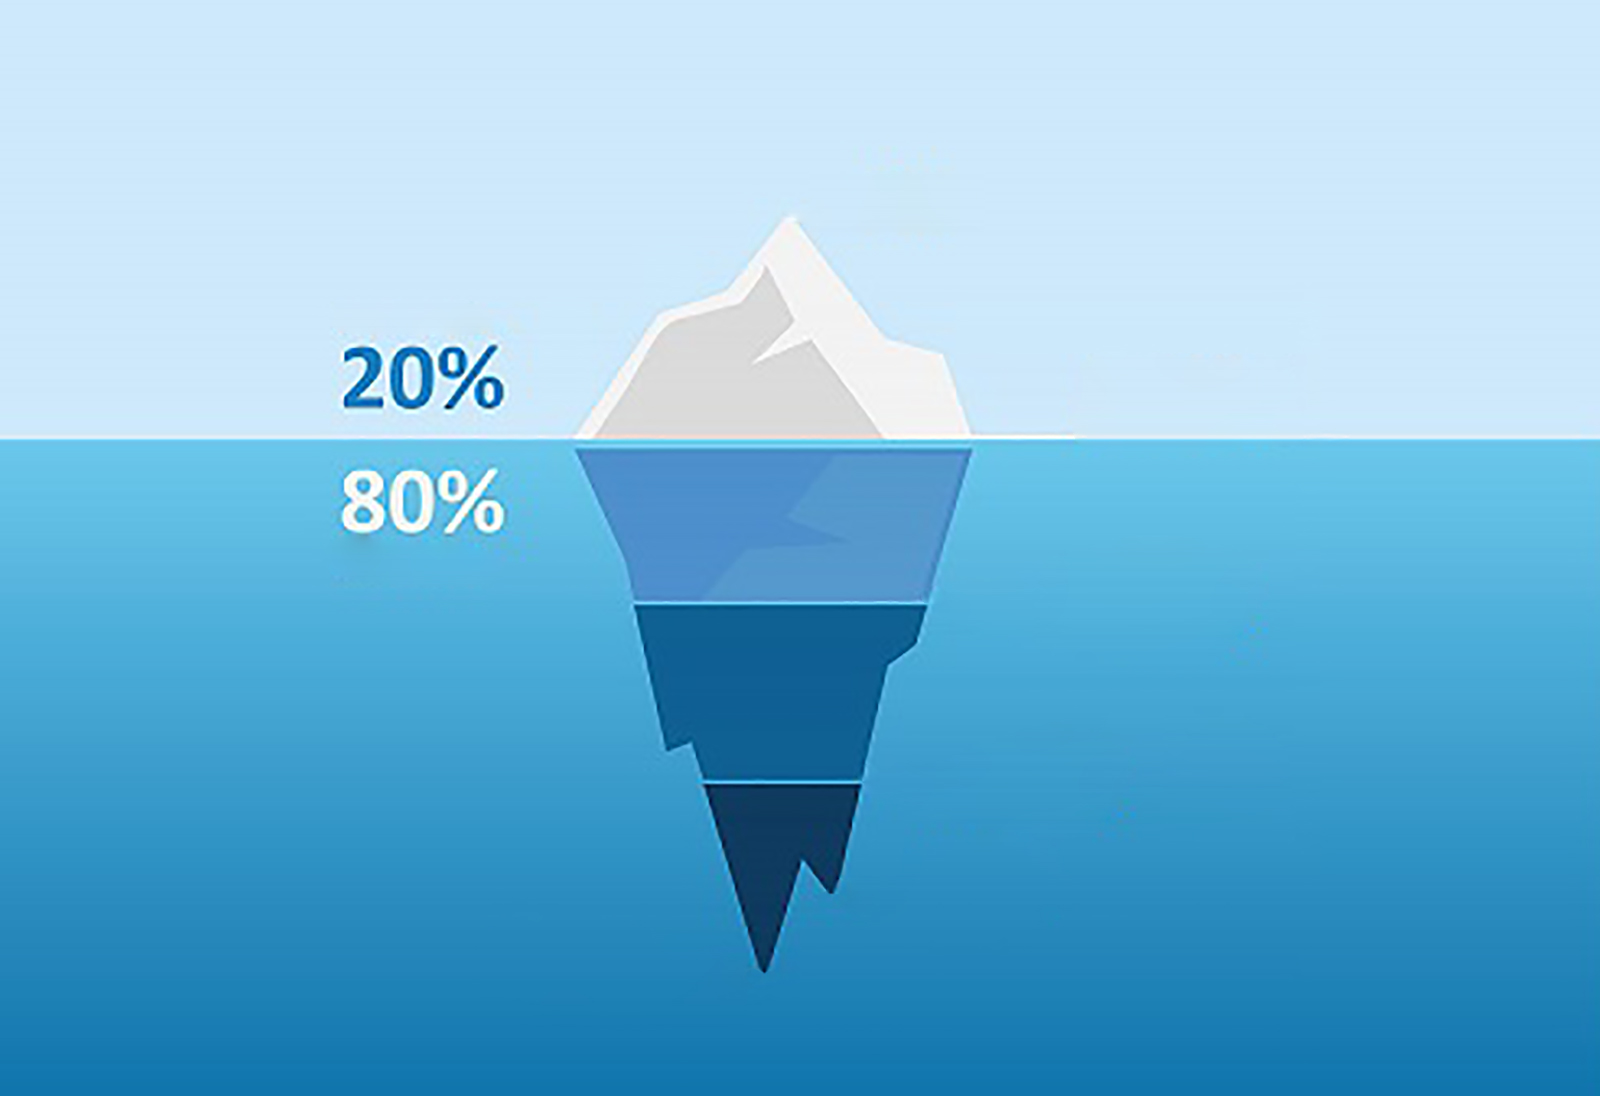 Rappresentazione grafica di un iceberg per illustrare la legge 80/20 di Pareto applicata al digital marketing